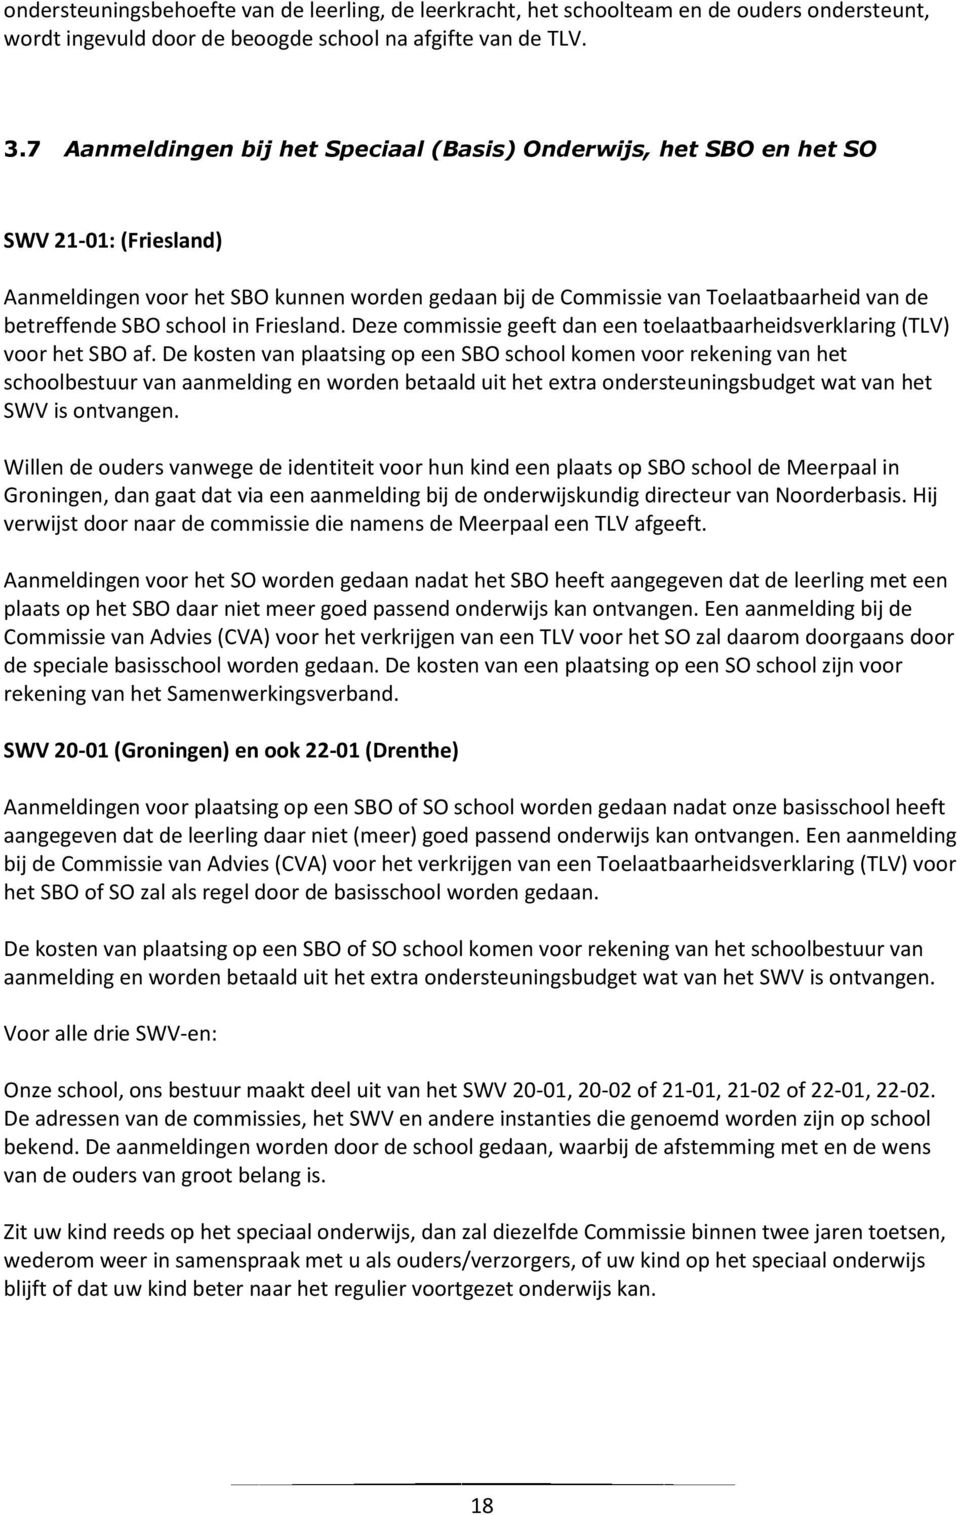 school in Friesland. Deze commissie geeft dan een toelaatbaarheidsverklaring (TLV) voor het SBO af.